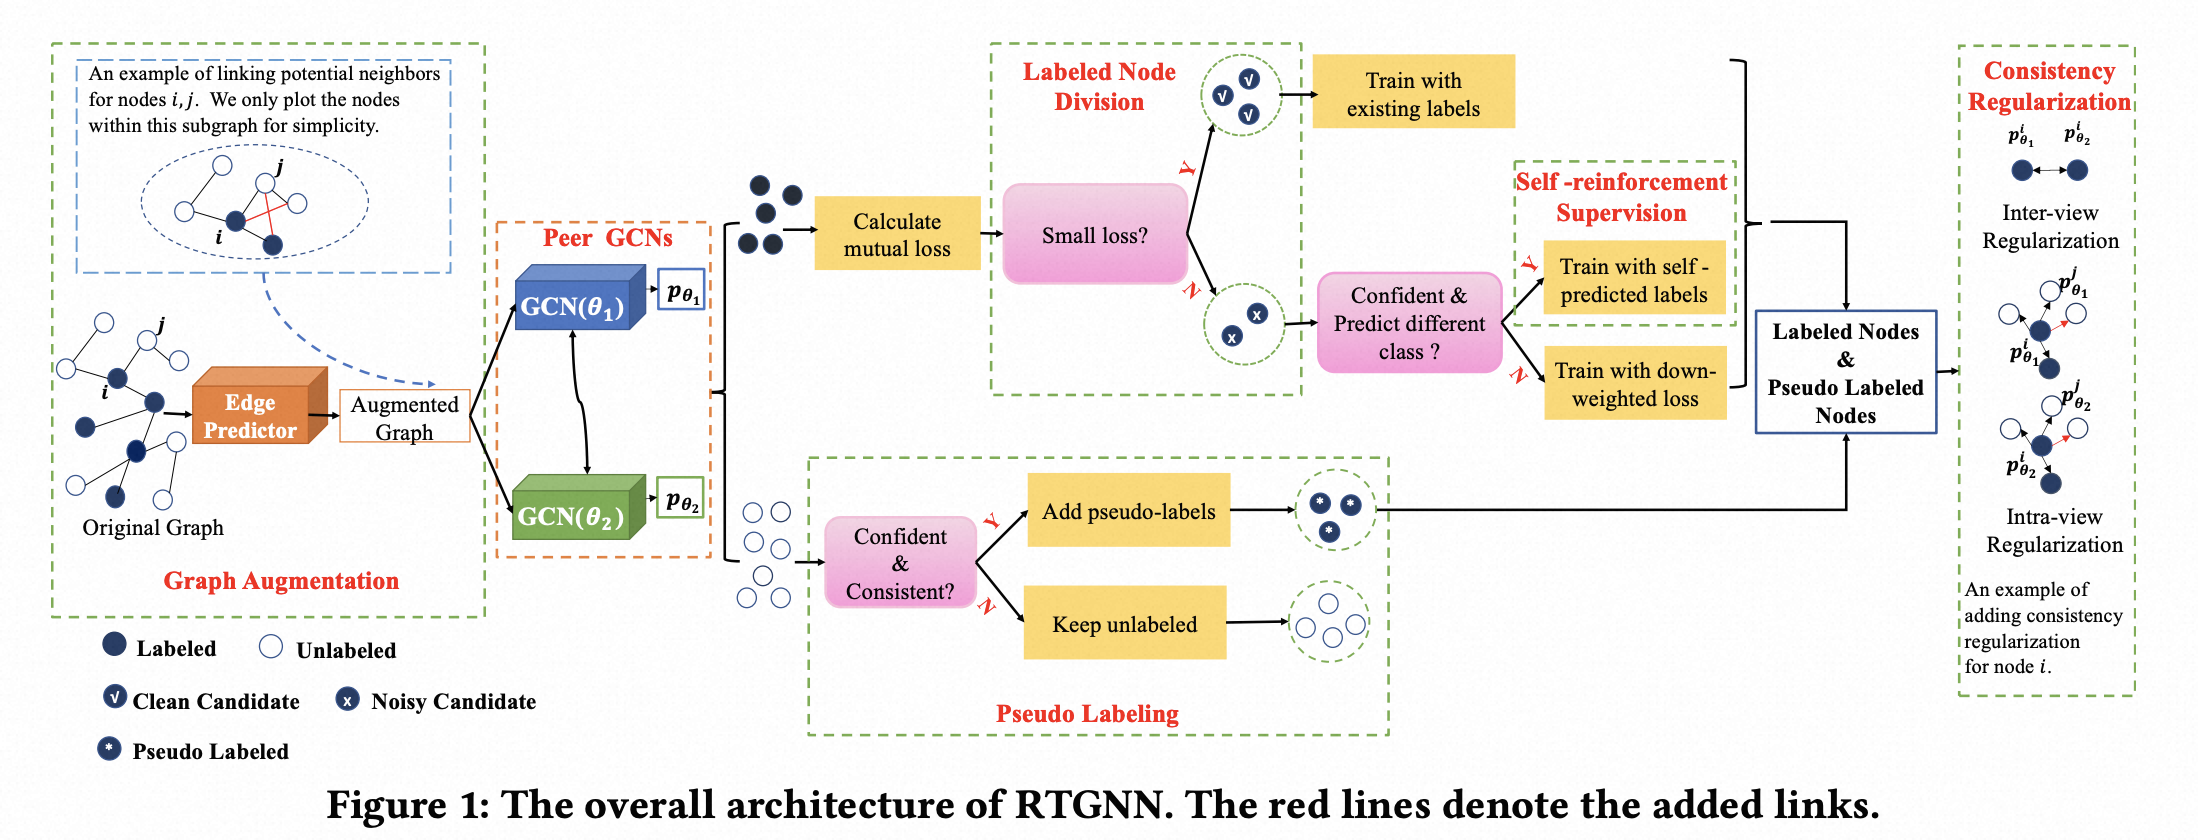 The overall framework of RTGNN